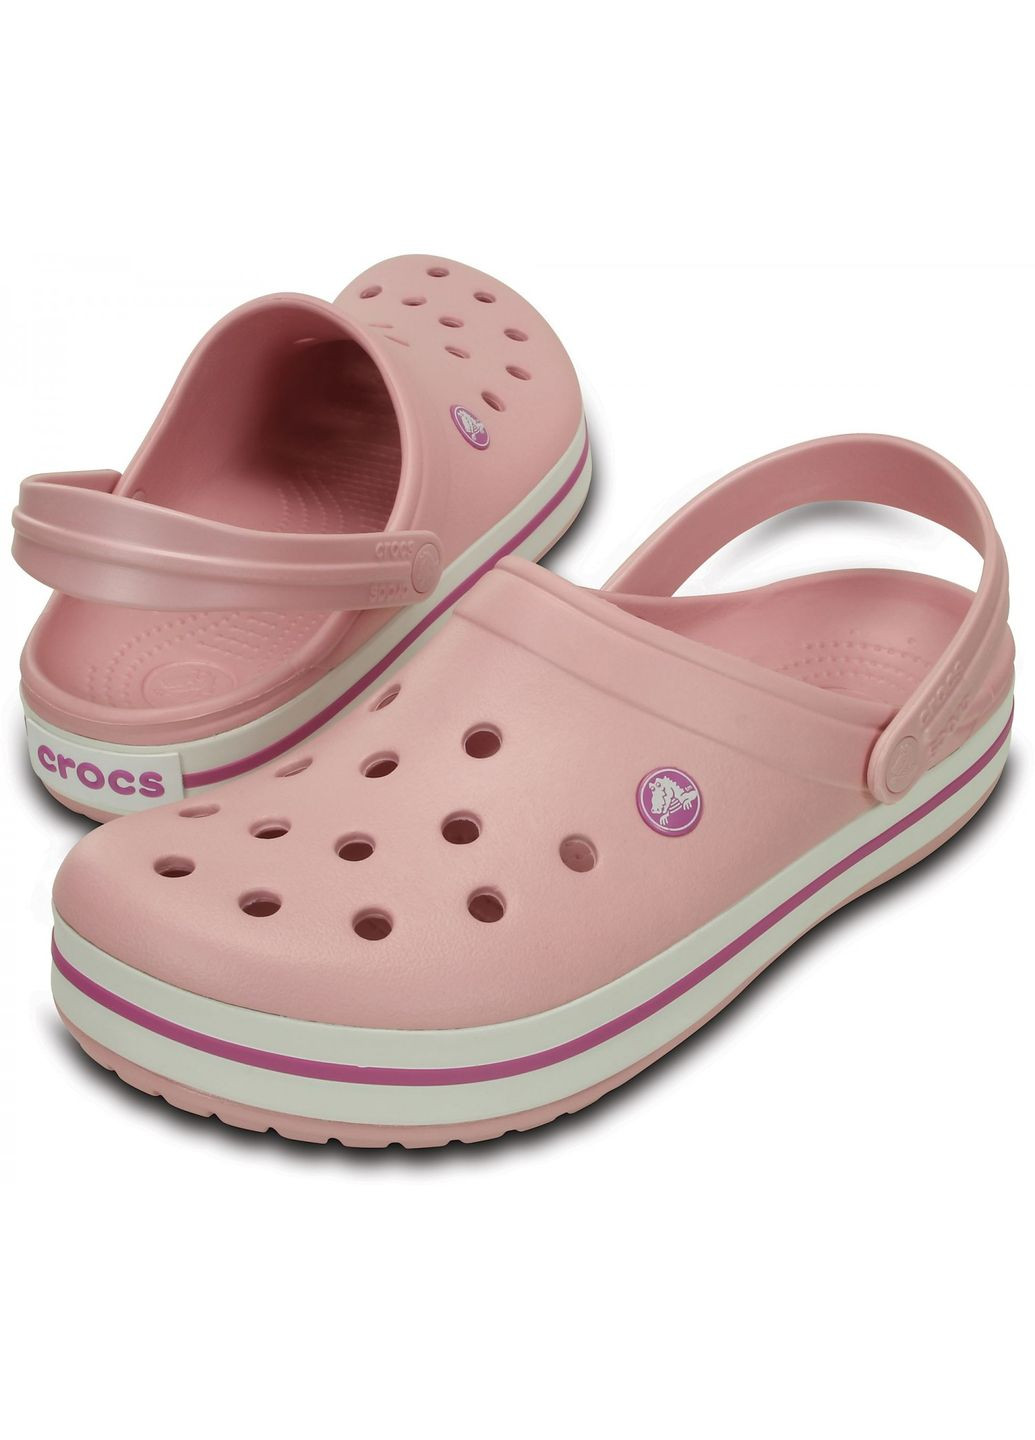 Сабо Crocband Clog Pearl pink M4W6-36-23 см 11016-W Crocs (281158539)